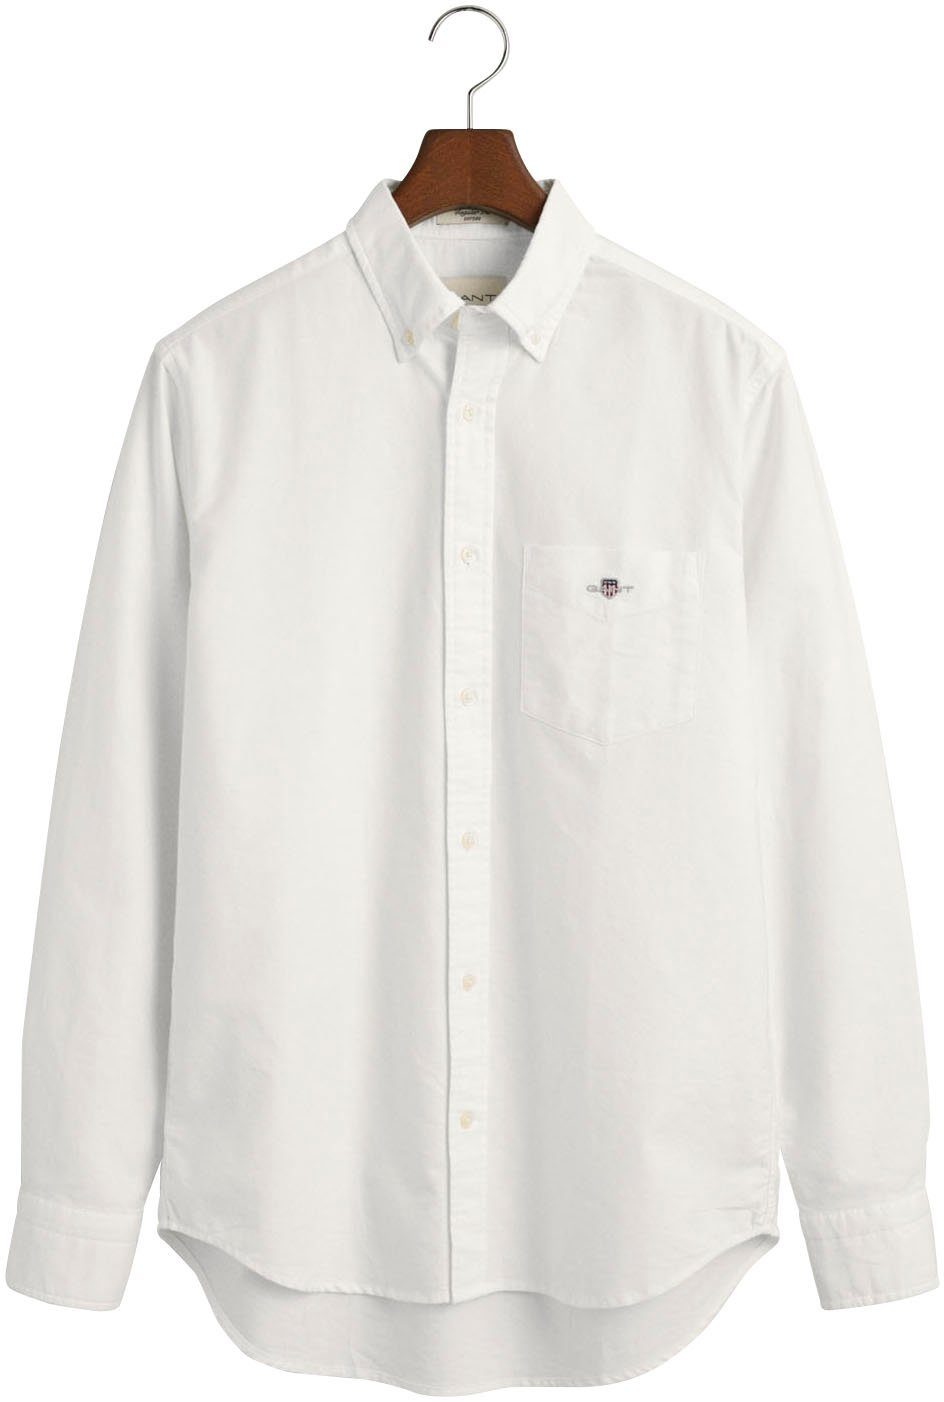 SHIRT Hemd REG Regular OXFORD white Businesshemd Oxford Gant Fit